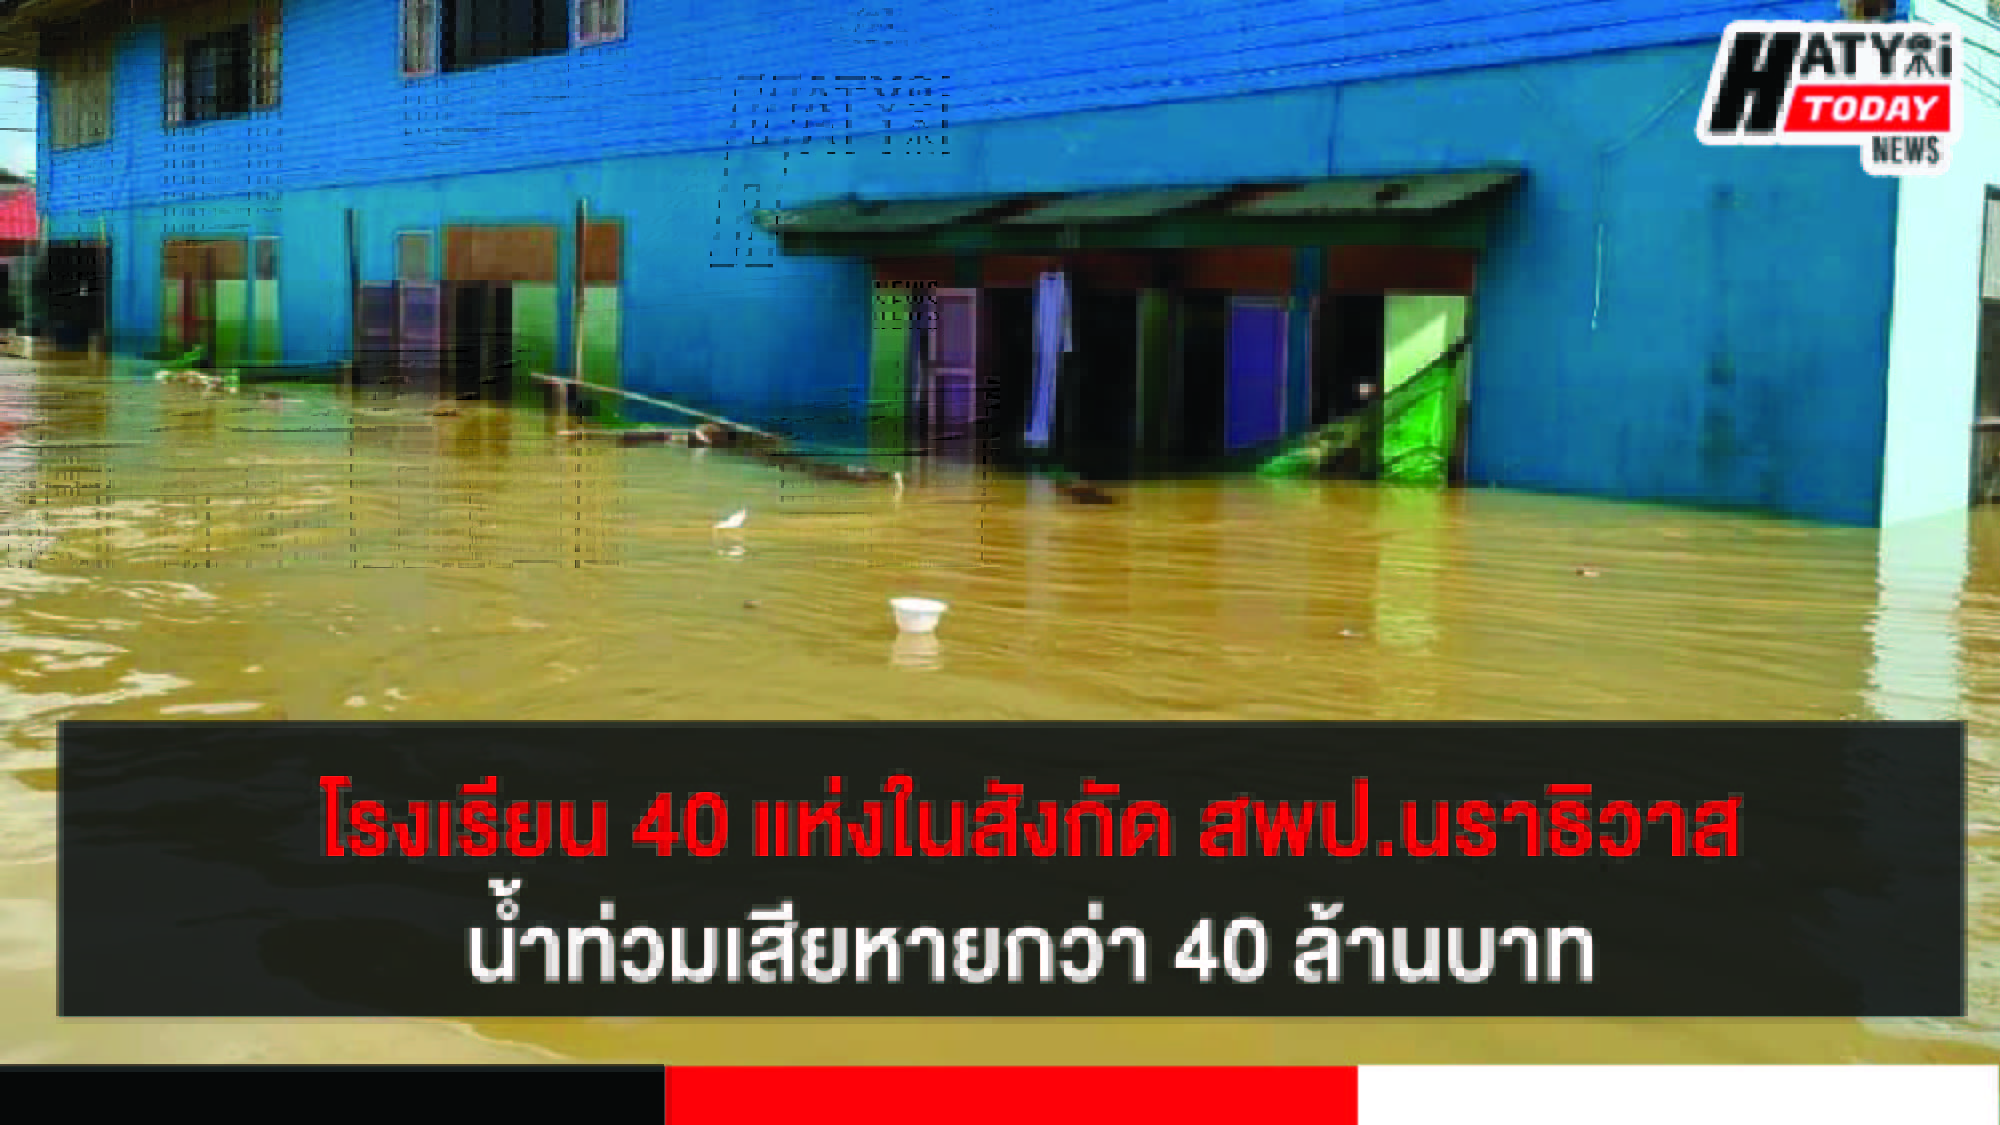 โรงเรียน 40 แห่งในสังกัด สพป.นราธิวาส เขต2 ได้รับผลกระทบจากน้ำท่วม มูลค่าความเสียหายกว่า 40 ล้านบาท